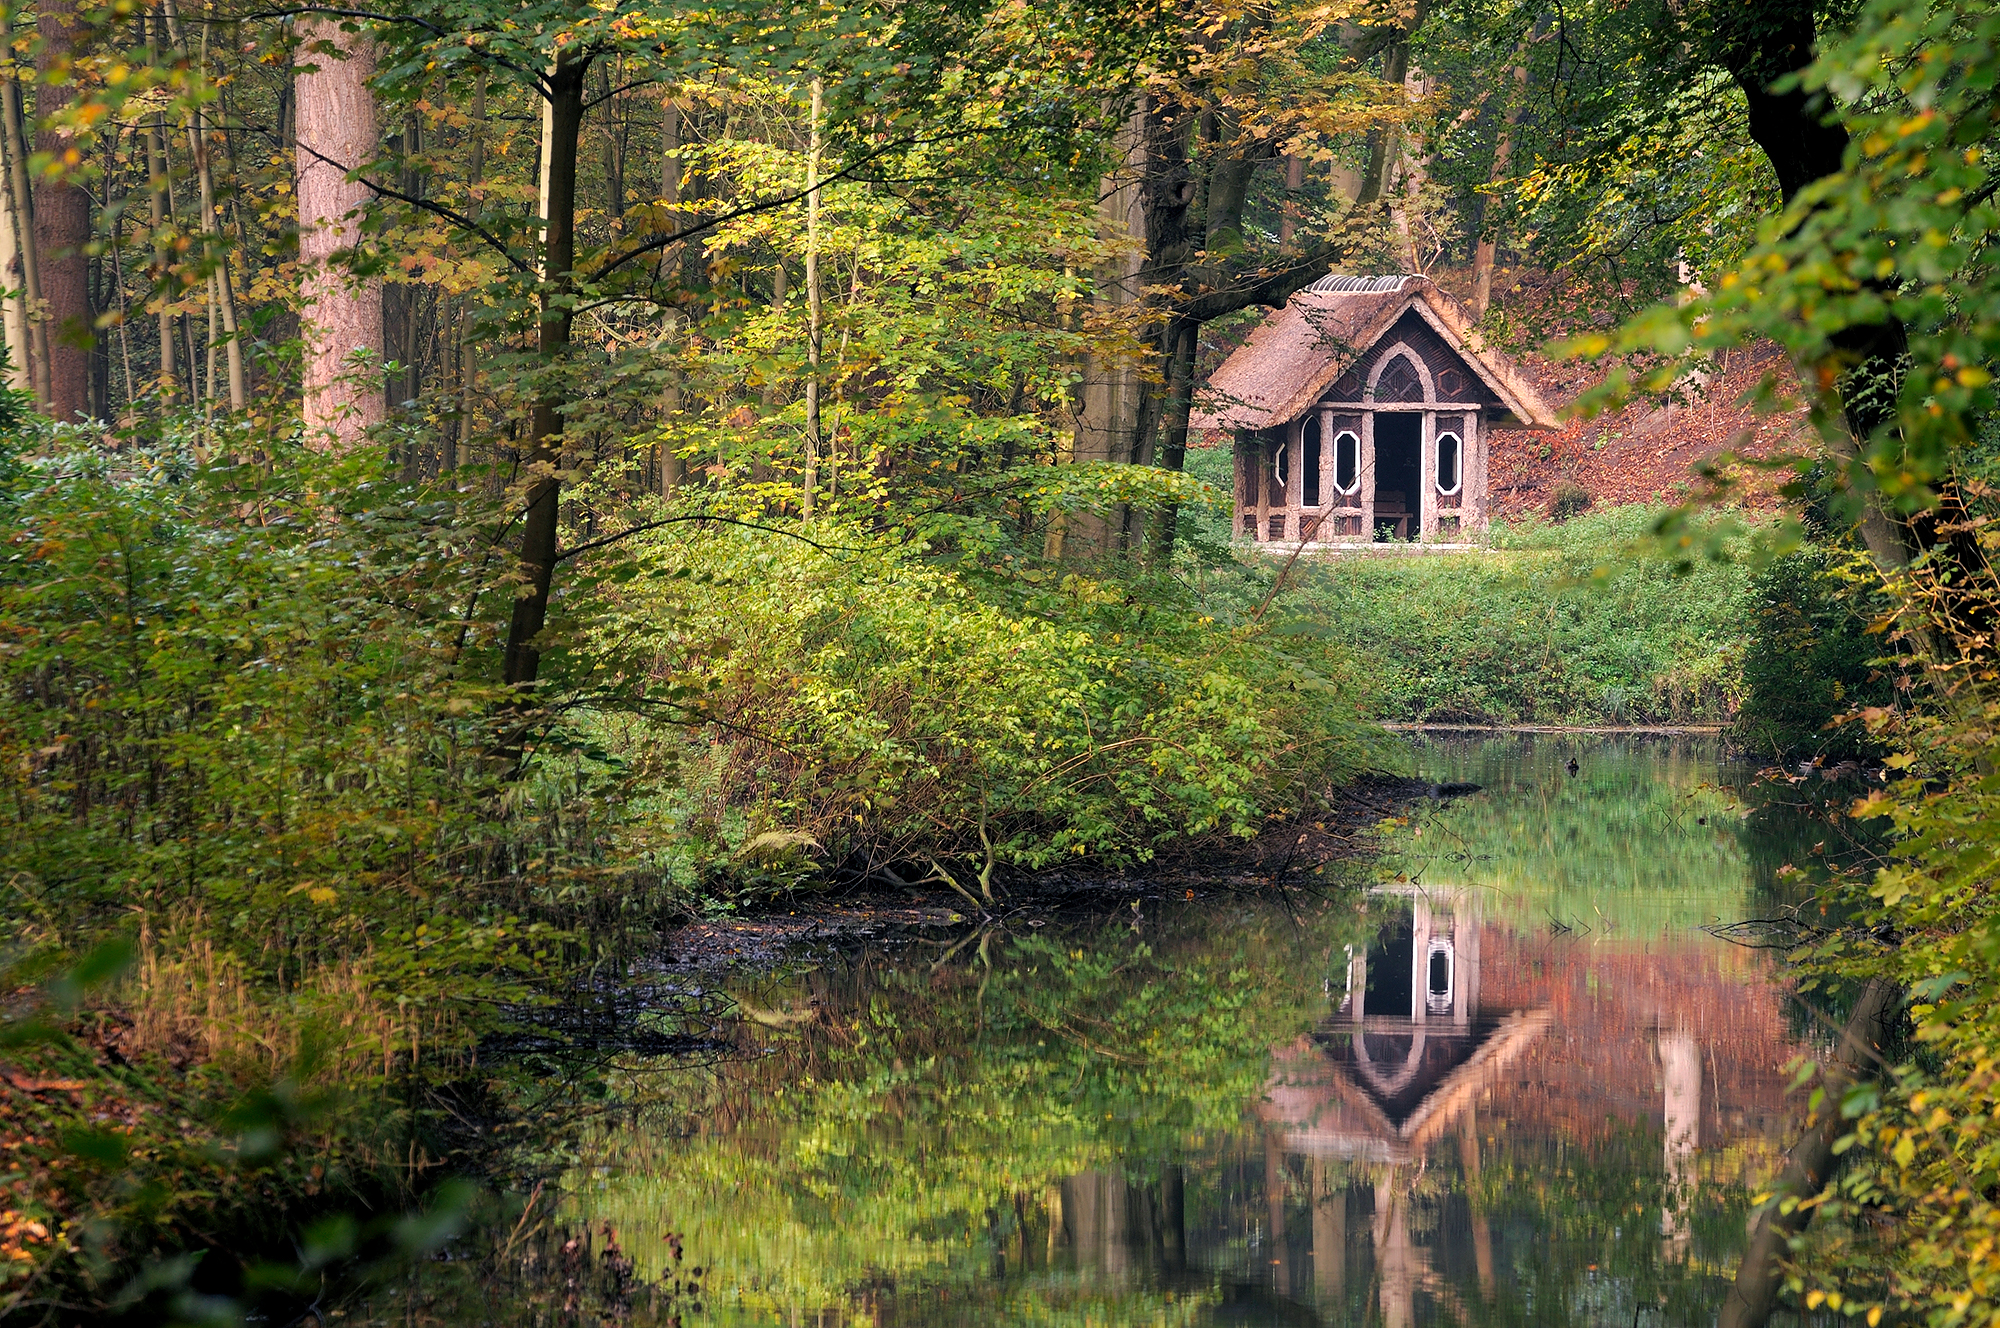 Doorkijkje naar een weerspiegeling van prieeltje in het water van beek tijdens de herfst op Landgoed Elswout in Overveen.